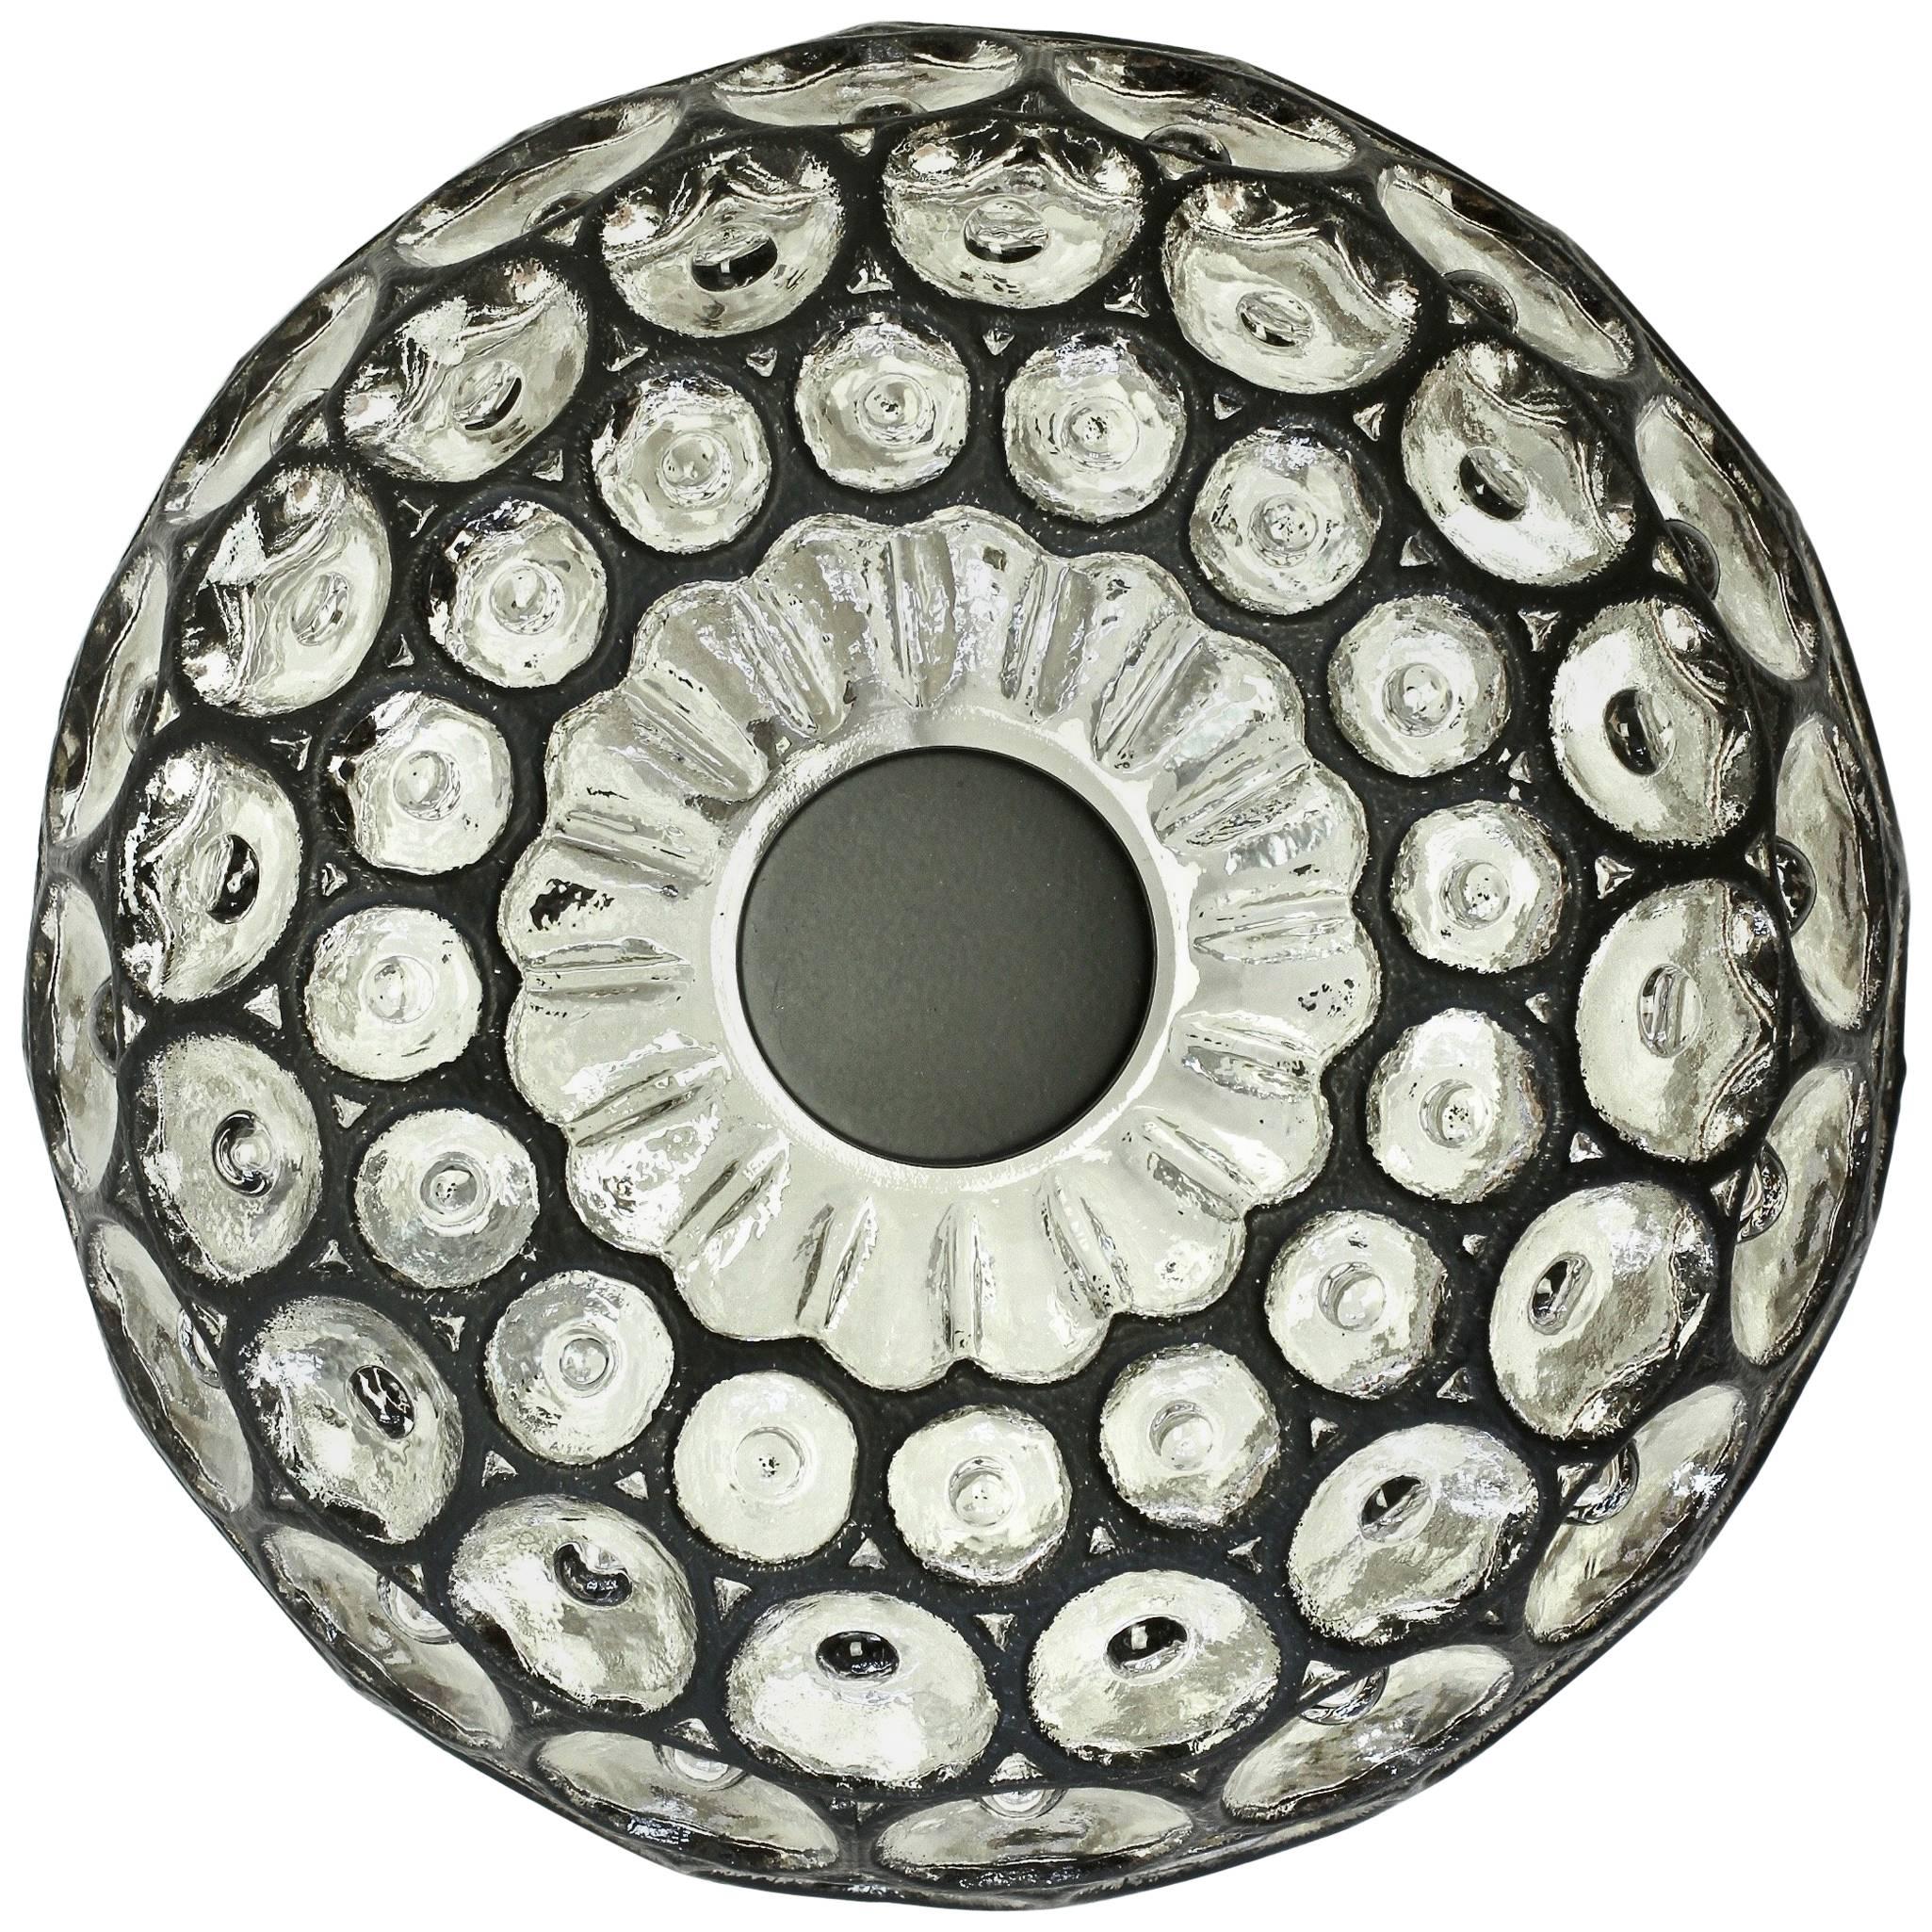 Limburg Glashütte 1960s Glass Black Iron Rings Circular Domed Flush Mount Light